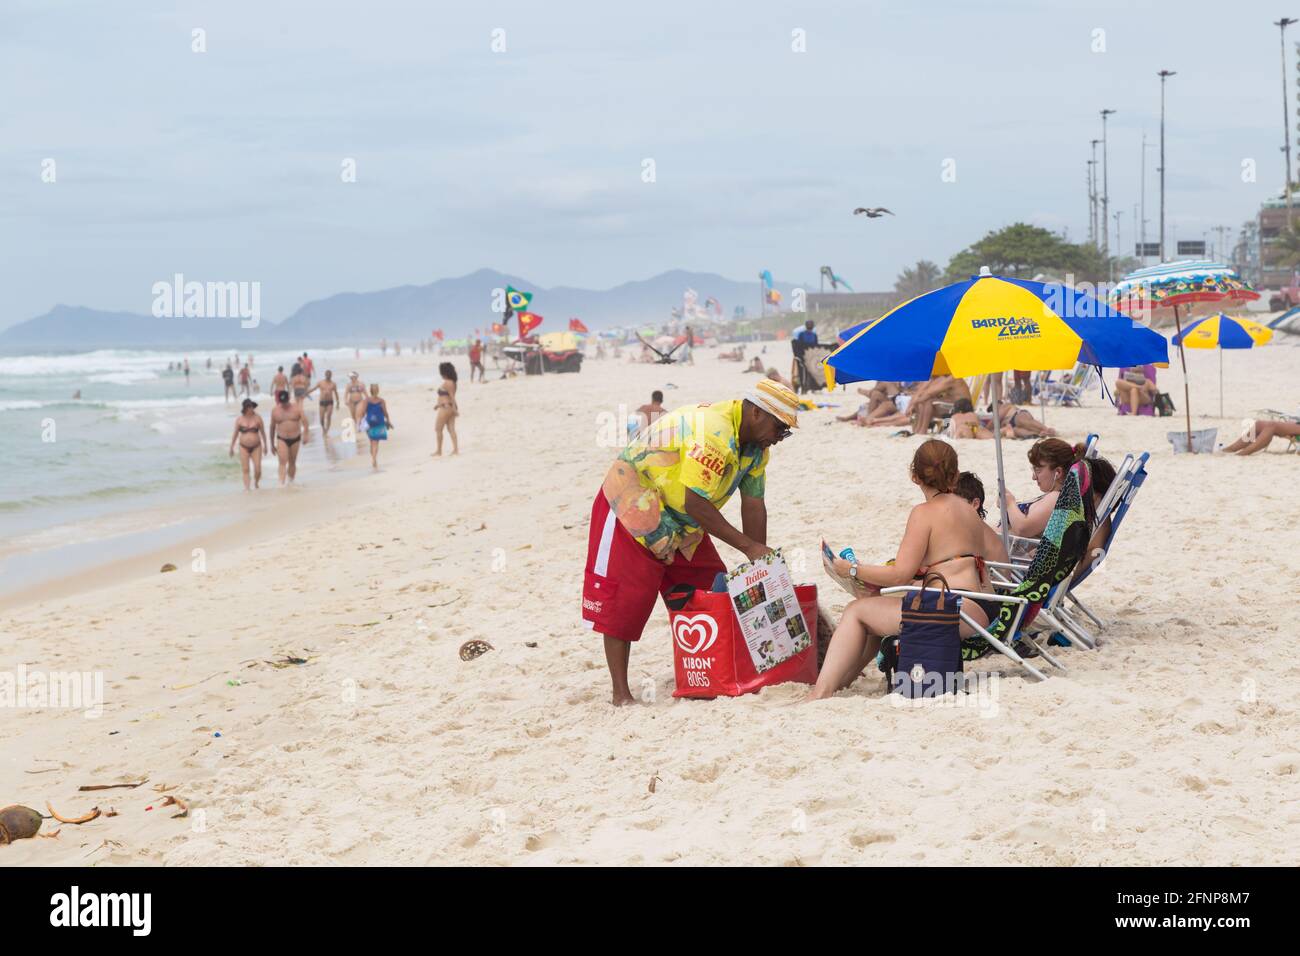 BARRA da TIJUCA, RIO DE JANEIRO, BRASILIEN - 2. JANUAR 2020: Eisverkäufer am Strand, der seine Produkte den Menschen anbietet. Stockfoto